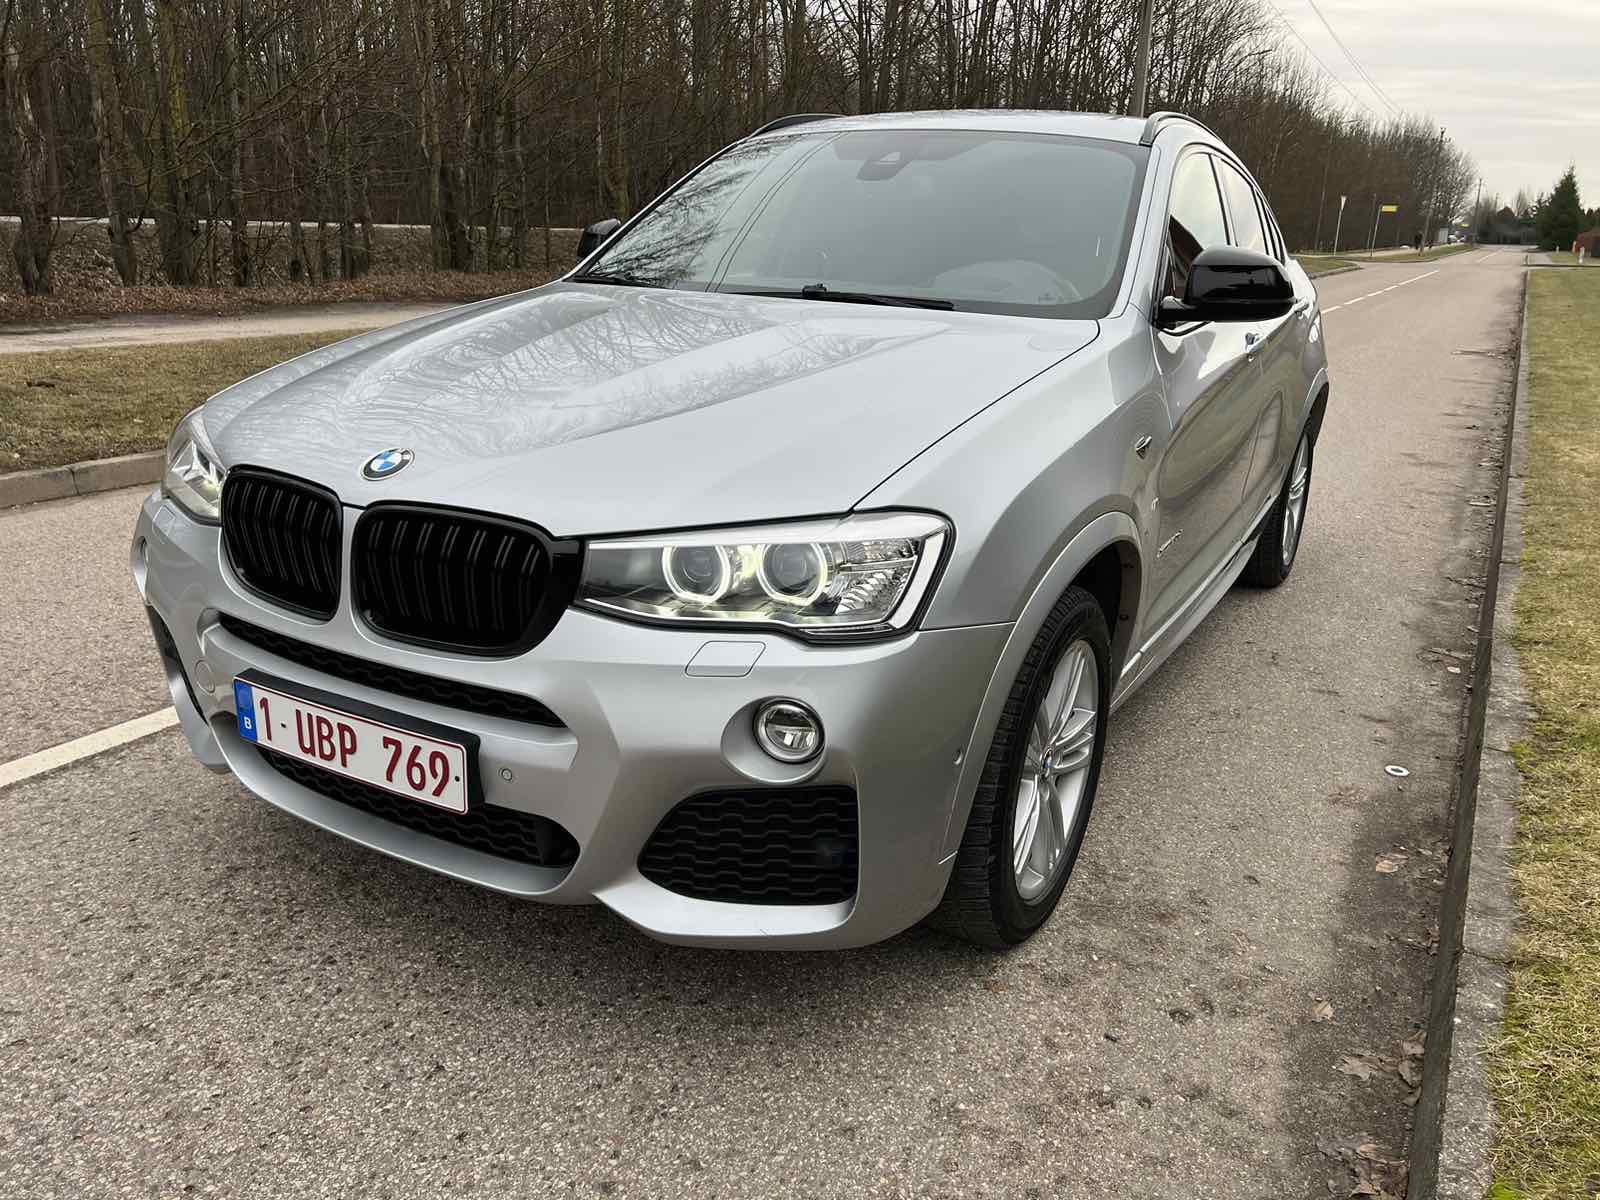 BMW X4 2.0l., visureigis